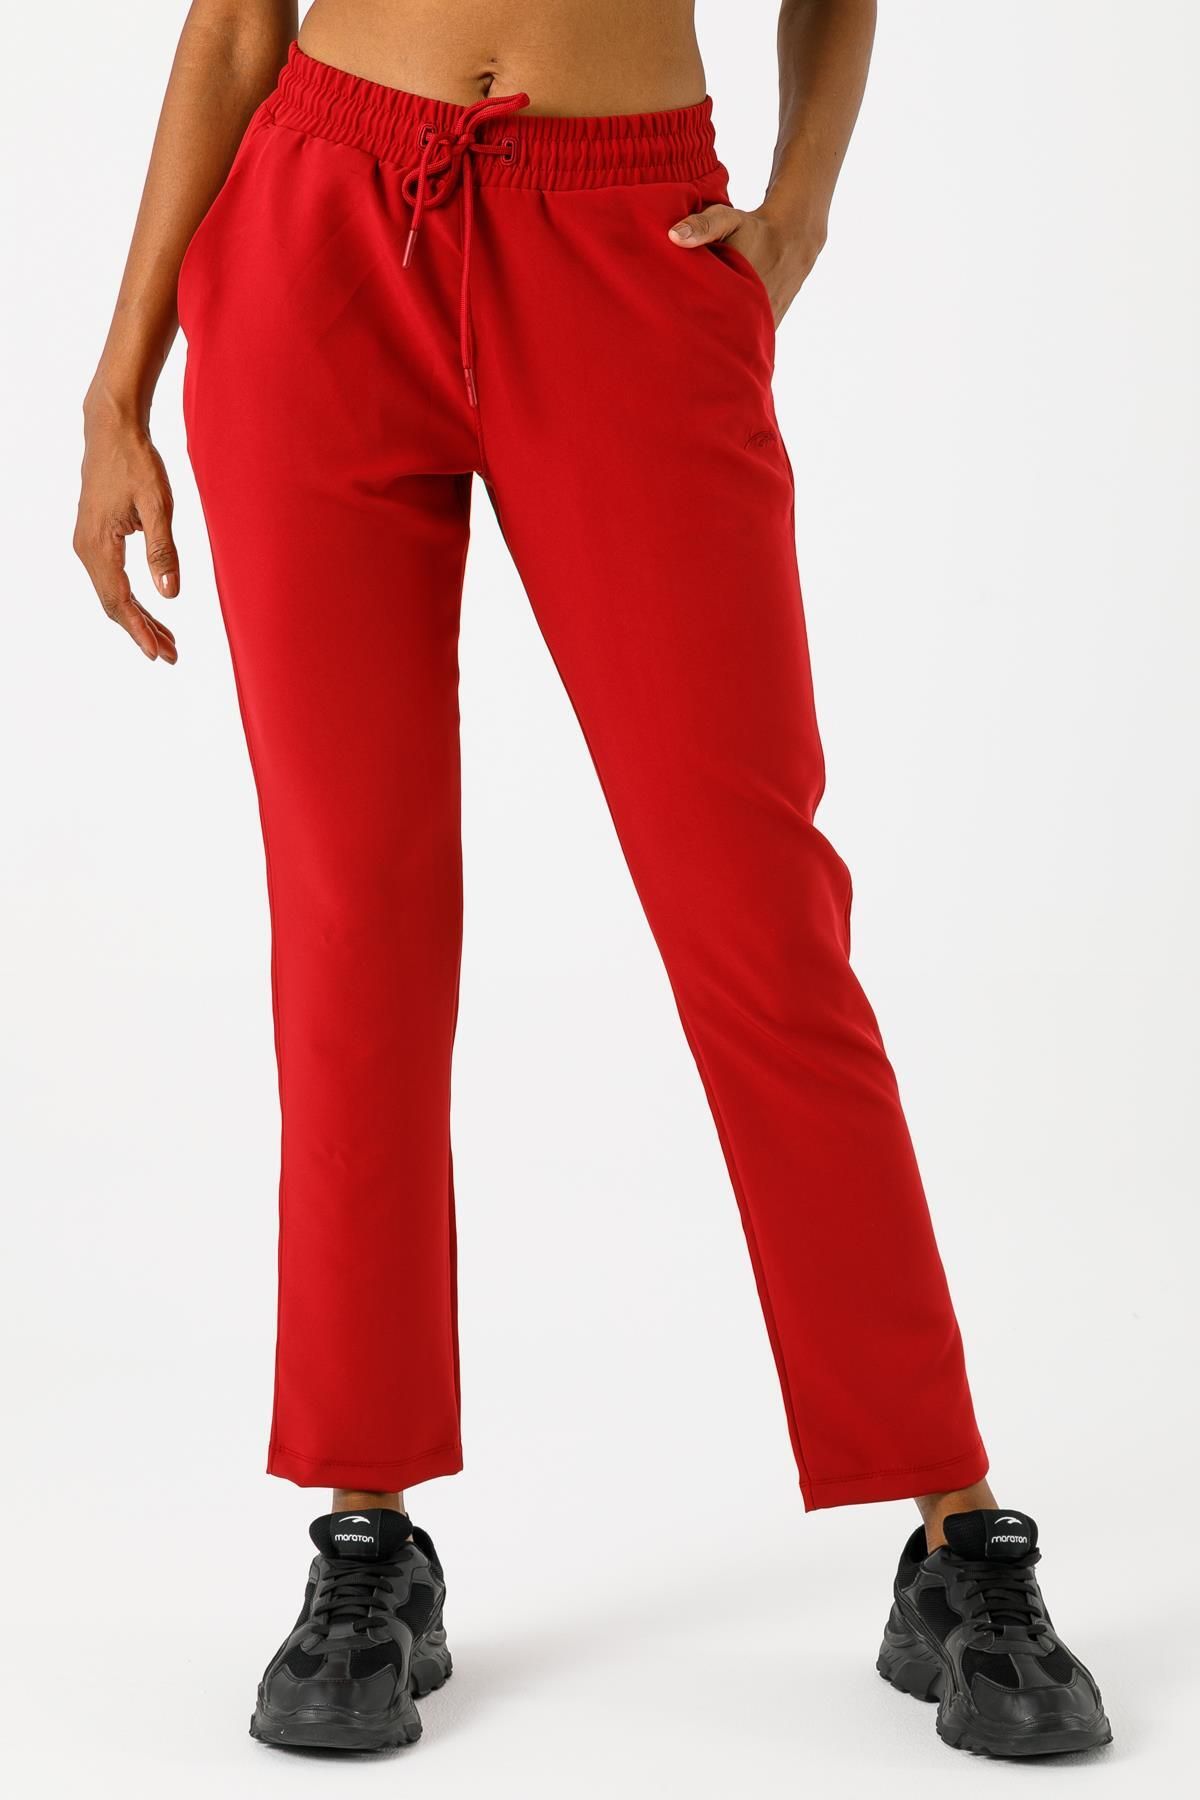 MARATON Sportswear Regular Kadın Basic Kırmızı Pantolon 19640